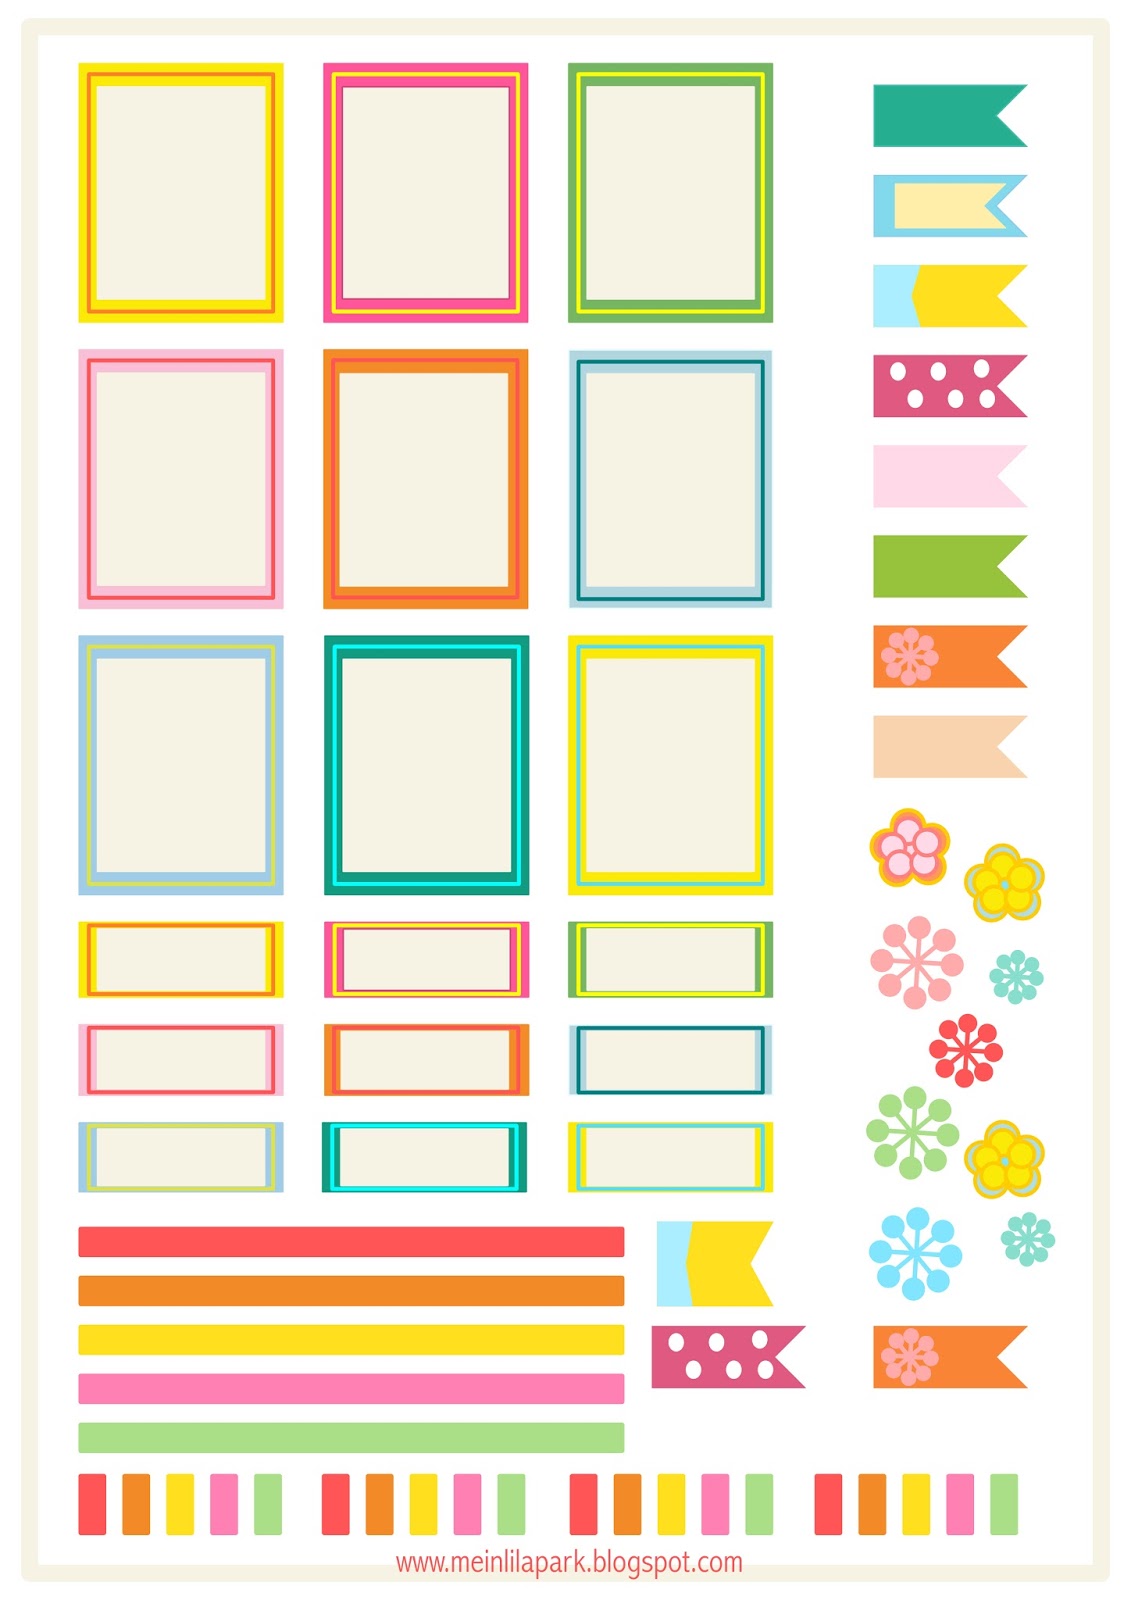 free-printable-bright-planner-stickers-ausdruckbare-etiketten-freebie-meinlilapark